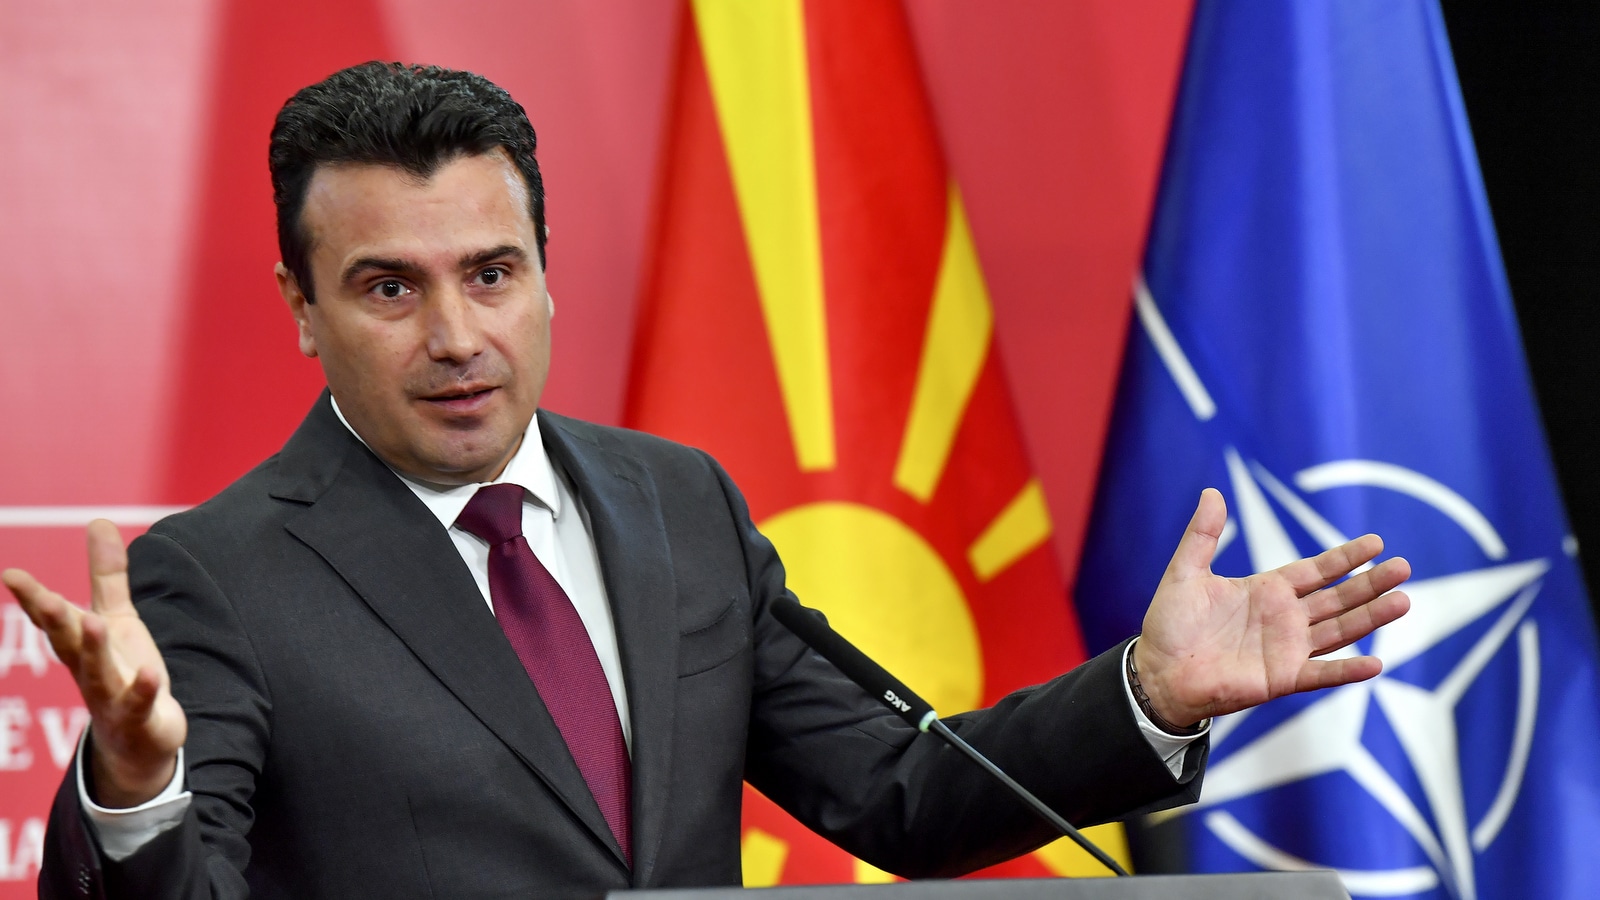 Σκόπια: Ανακοίνωσαν τα πρόσωπα του κυβερνητικού σχήματος Ζ.Ζάεφ και Α.Αχμέτι